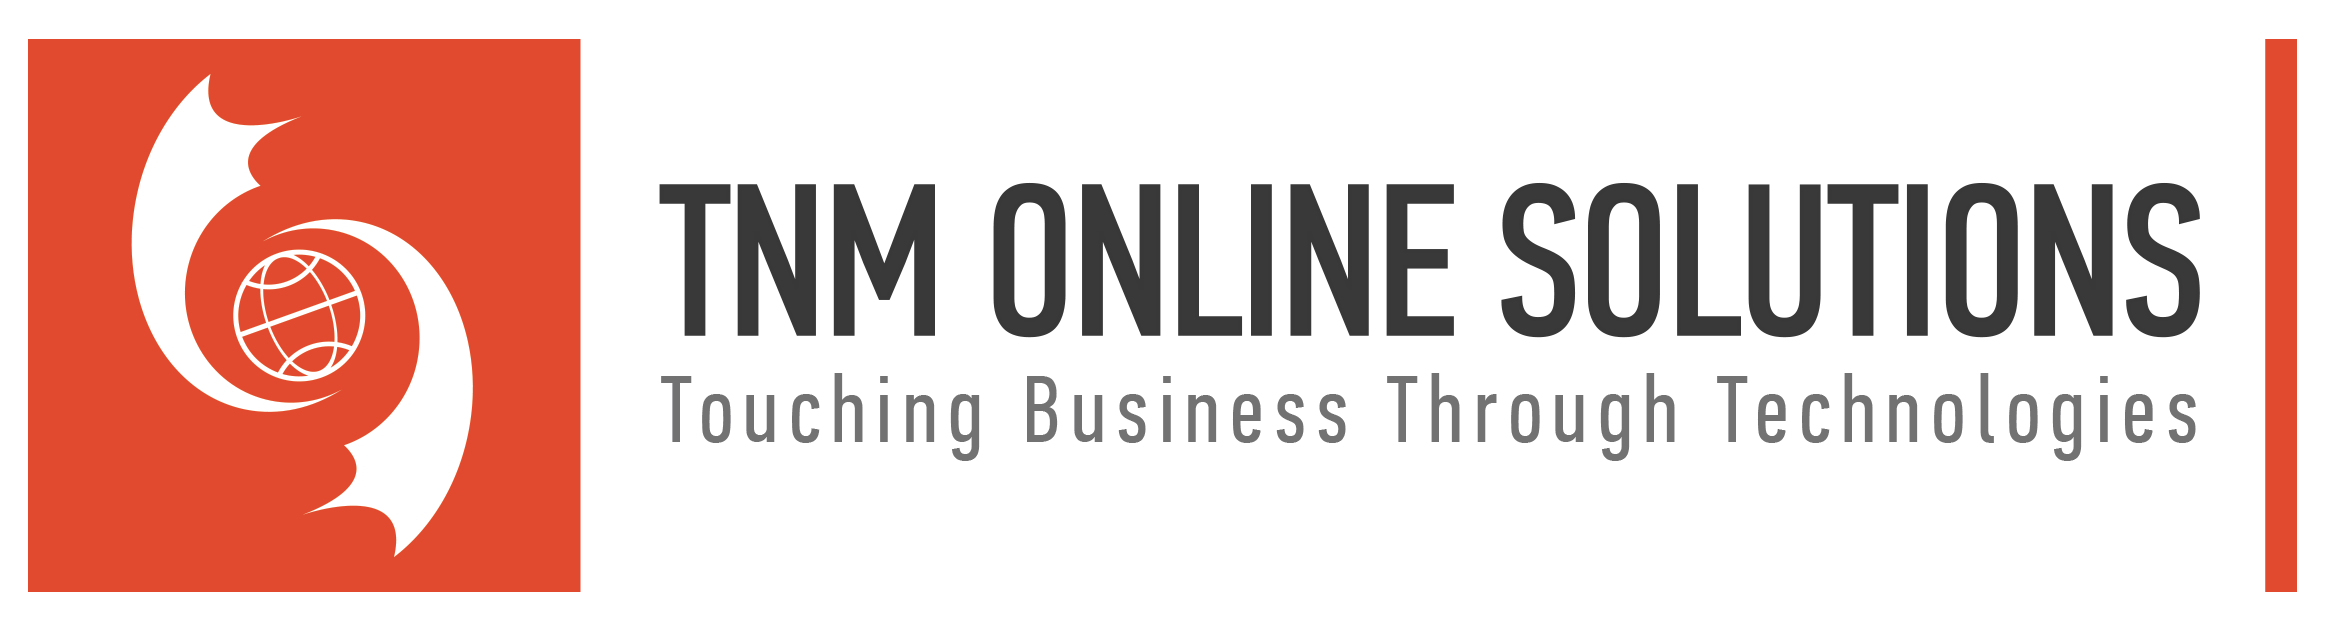 TNM Online Solutions